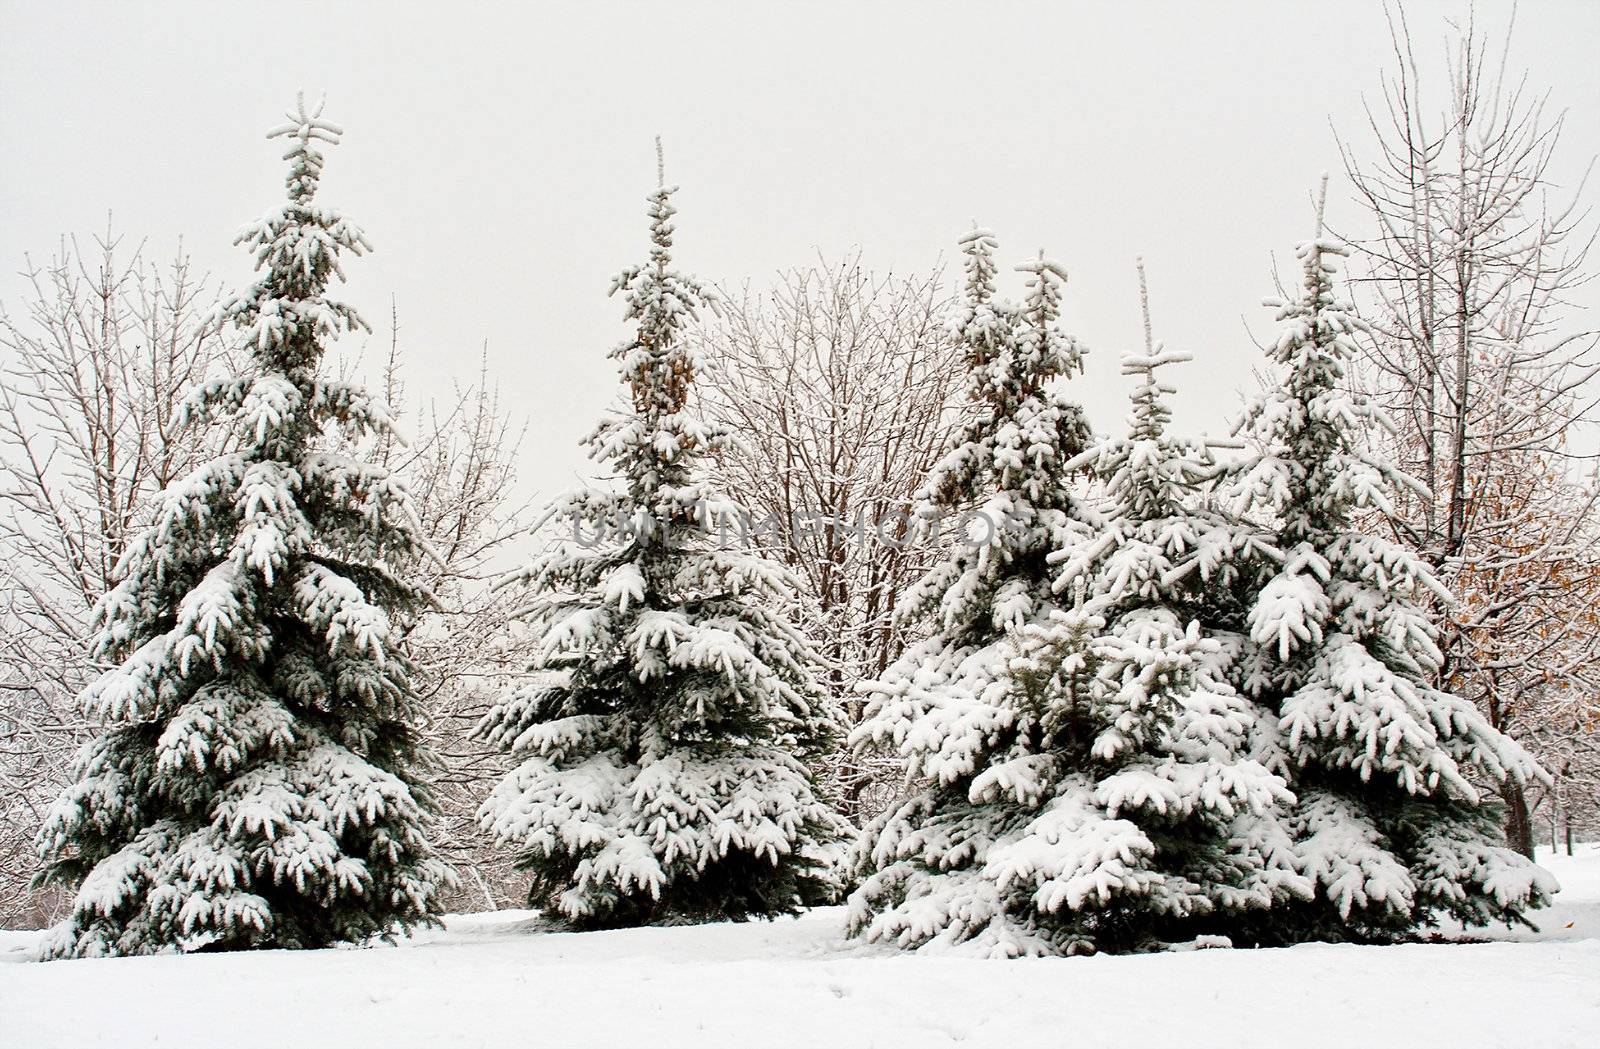 fir tree in snow by Alekcey